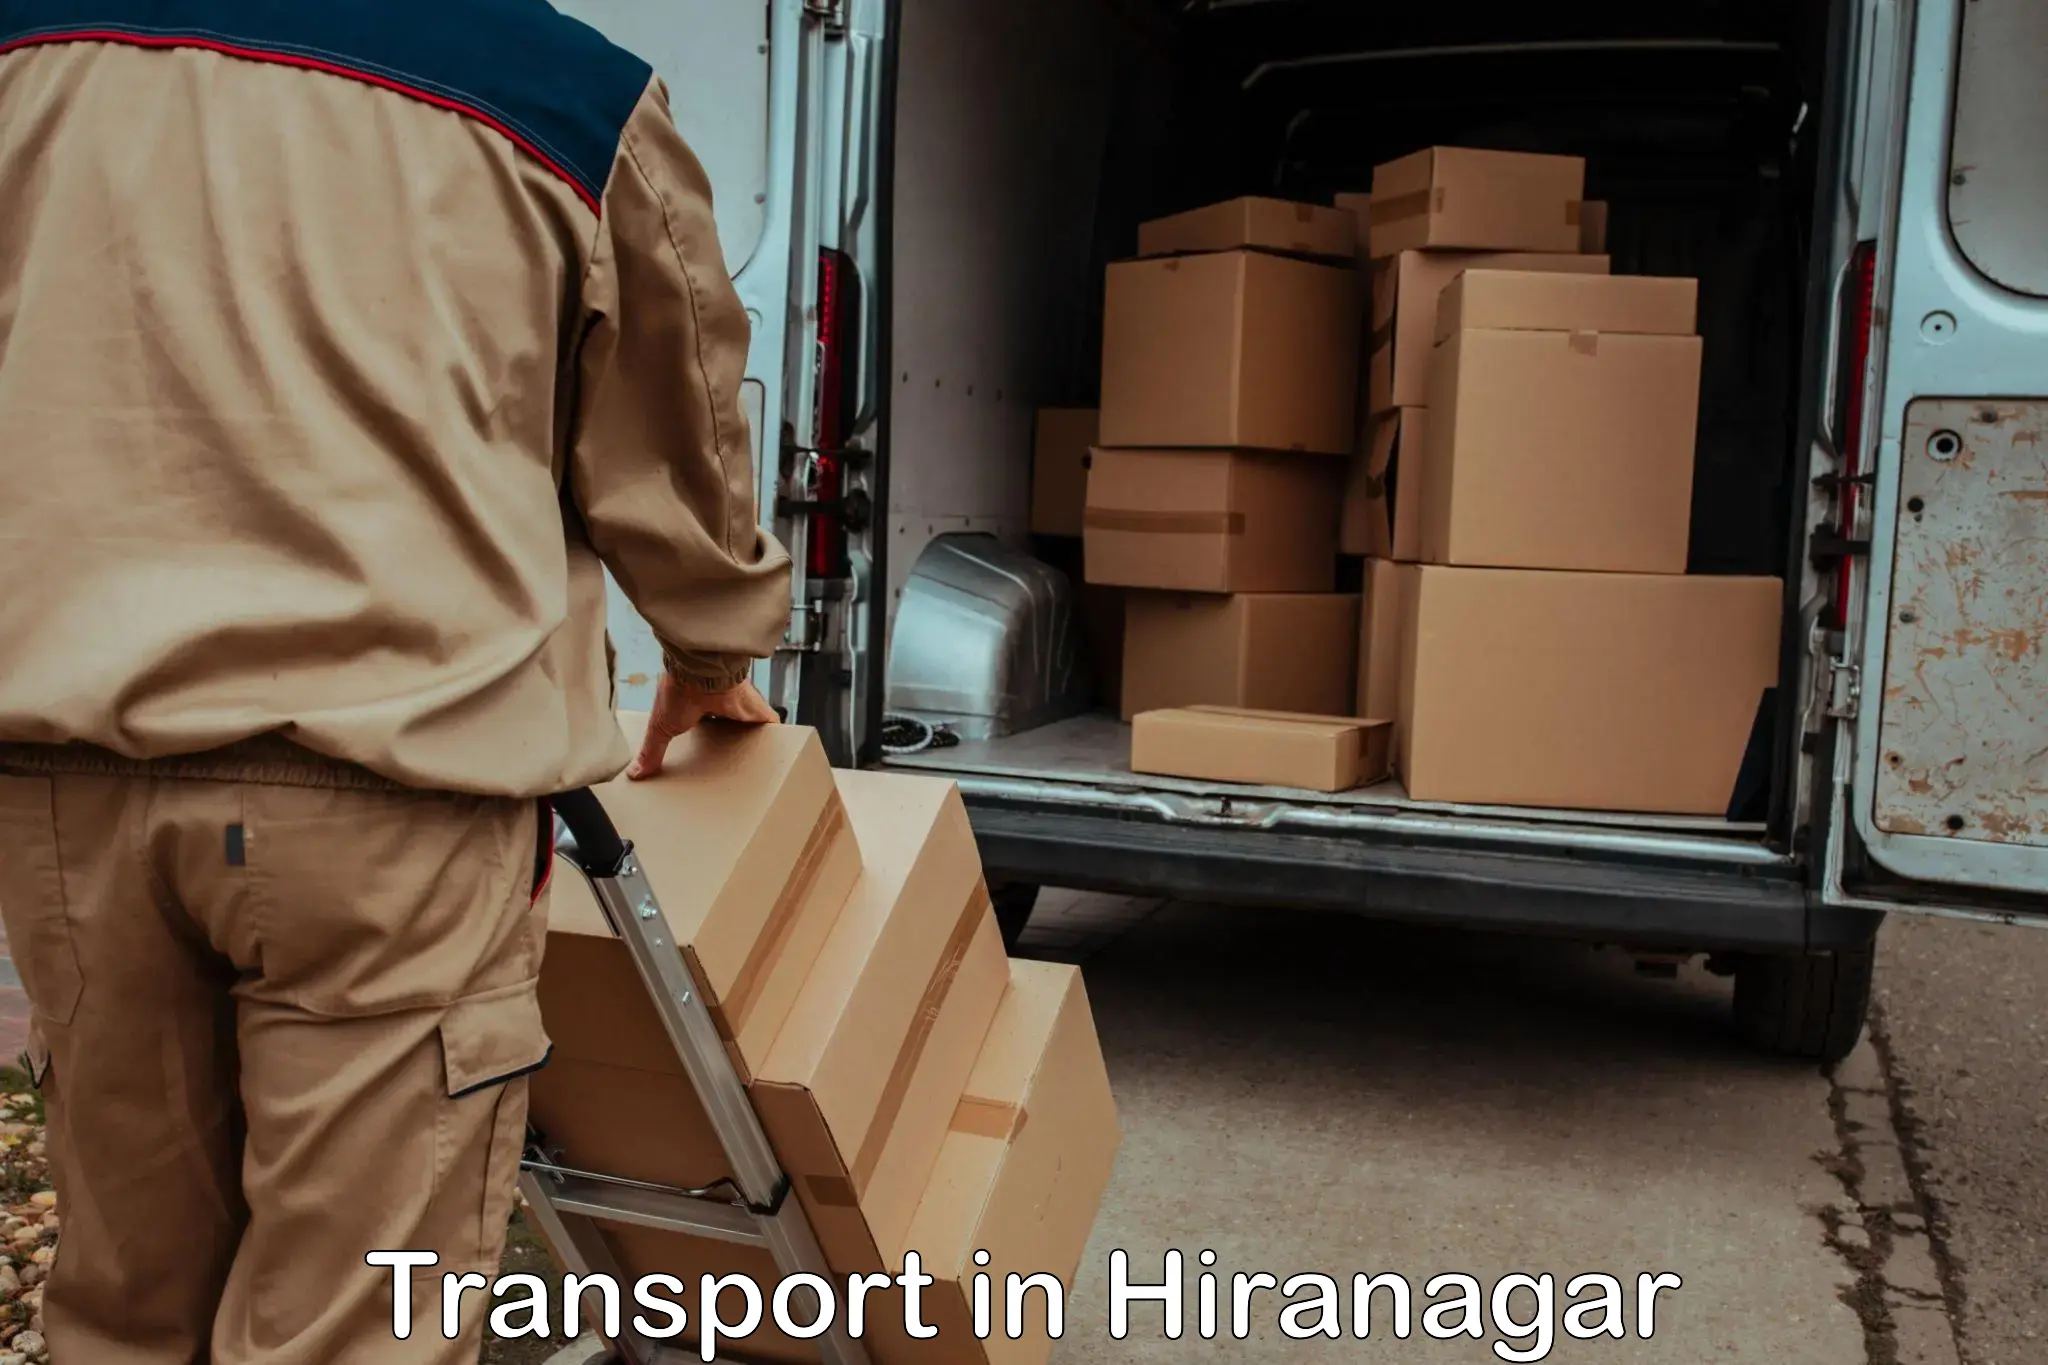 Cargo transportation services in Hiranagar